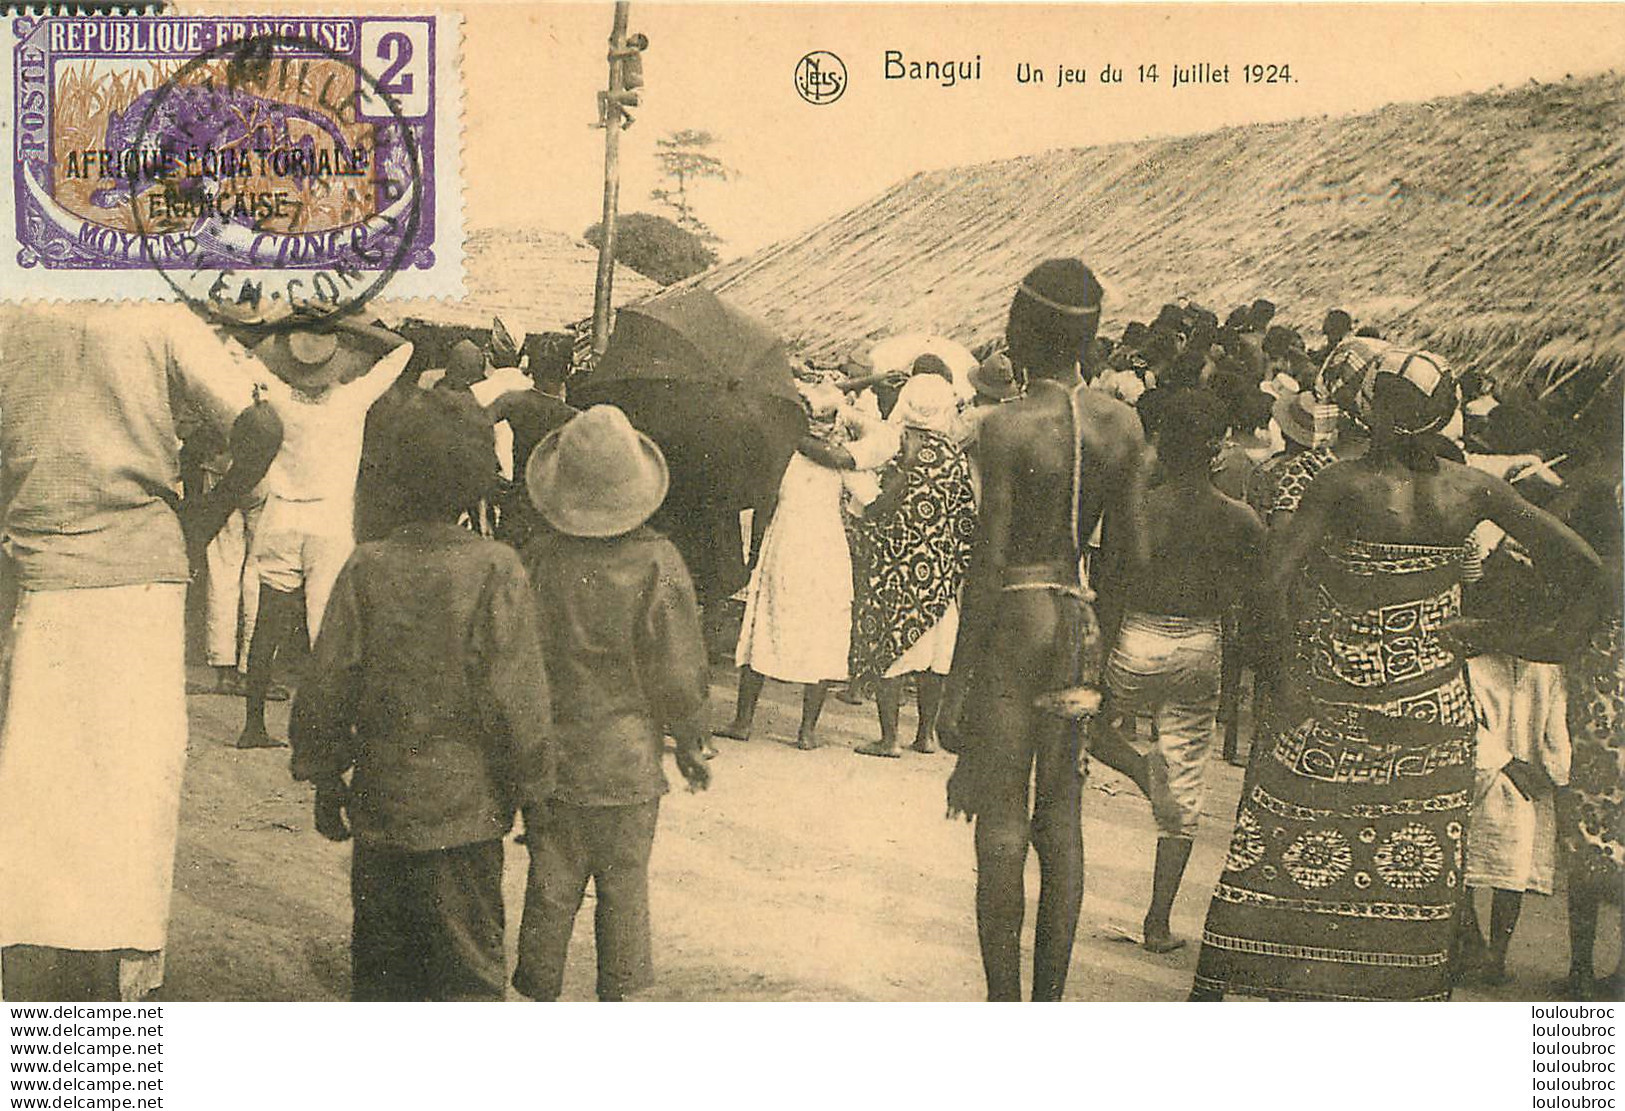 BANGUI UN JEU DU 14 JUILLET 1924  EDITION NELS - Central African Republic